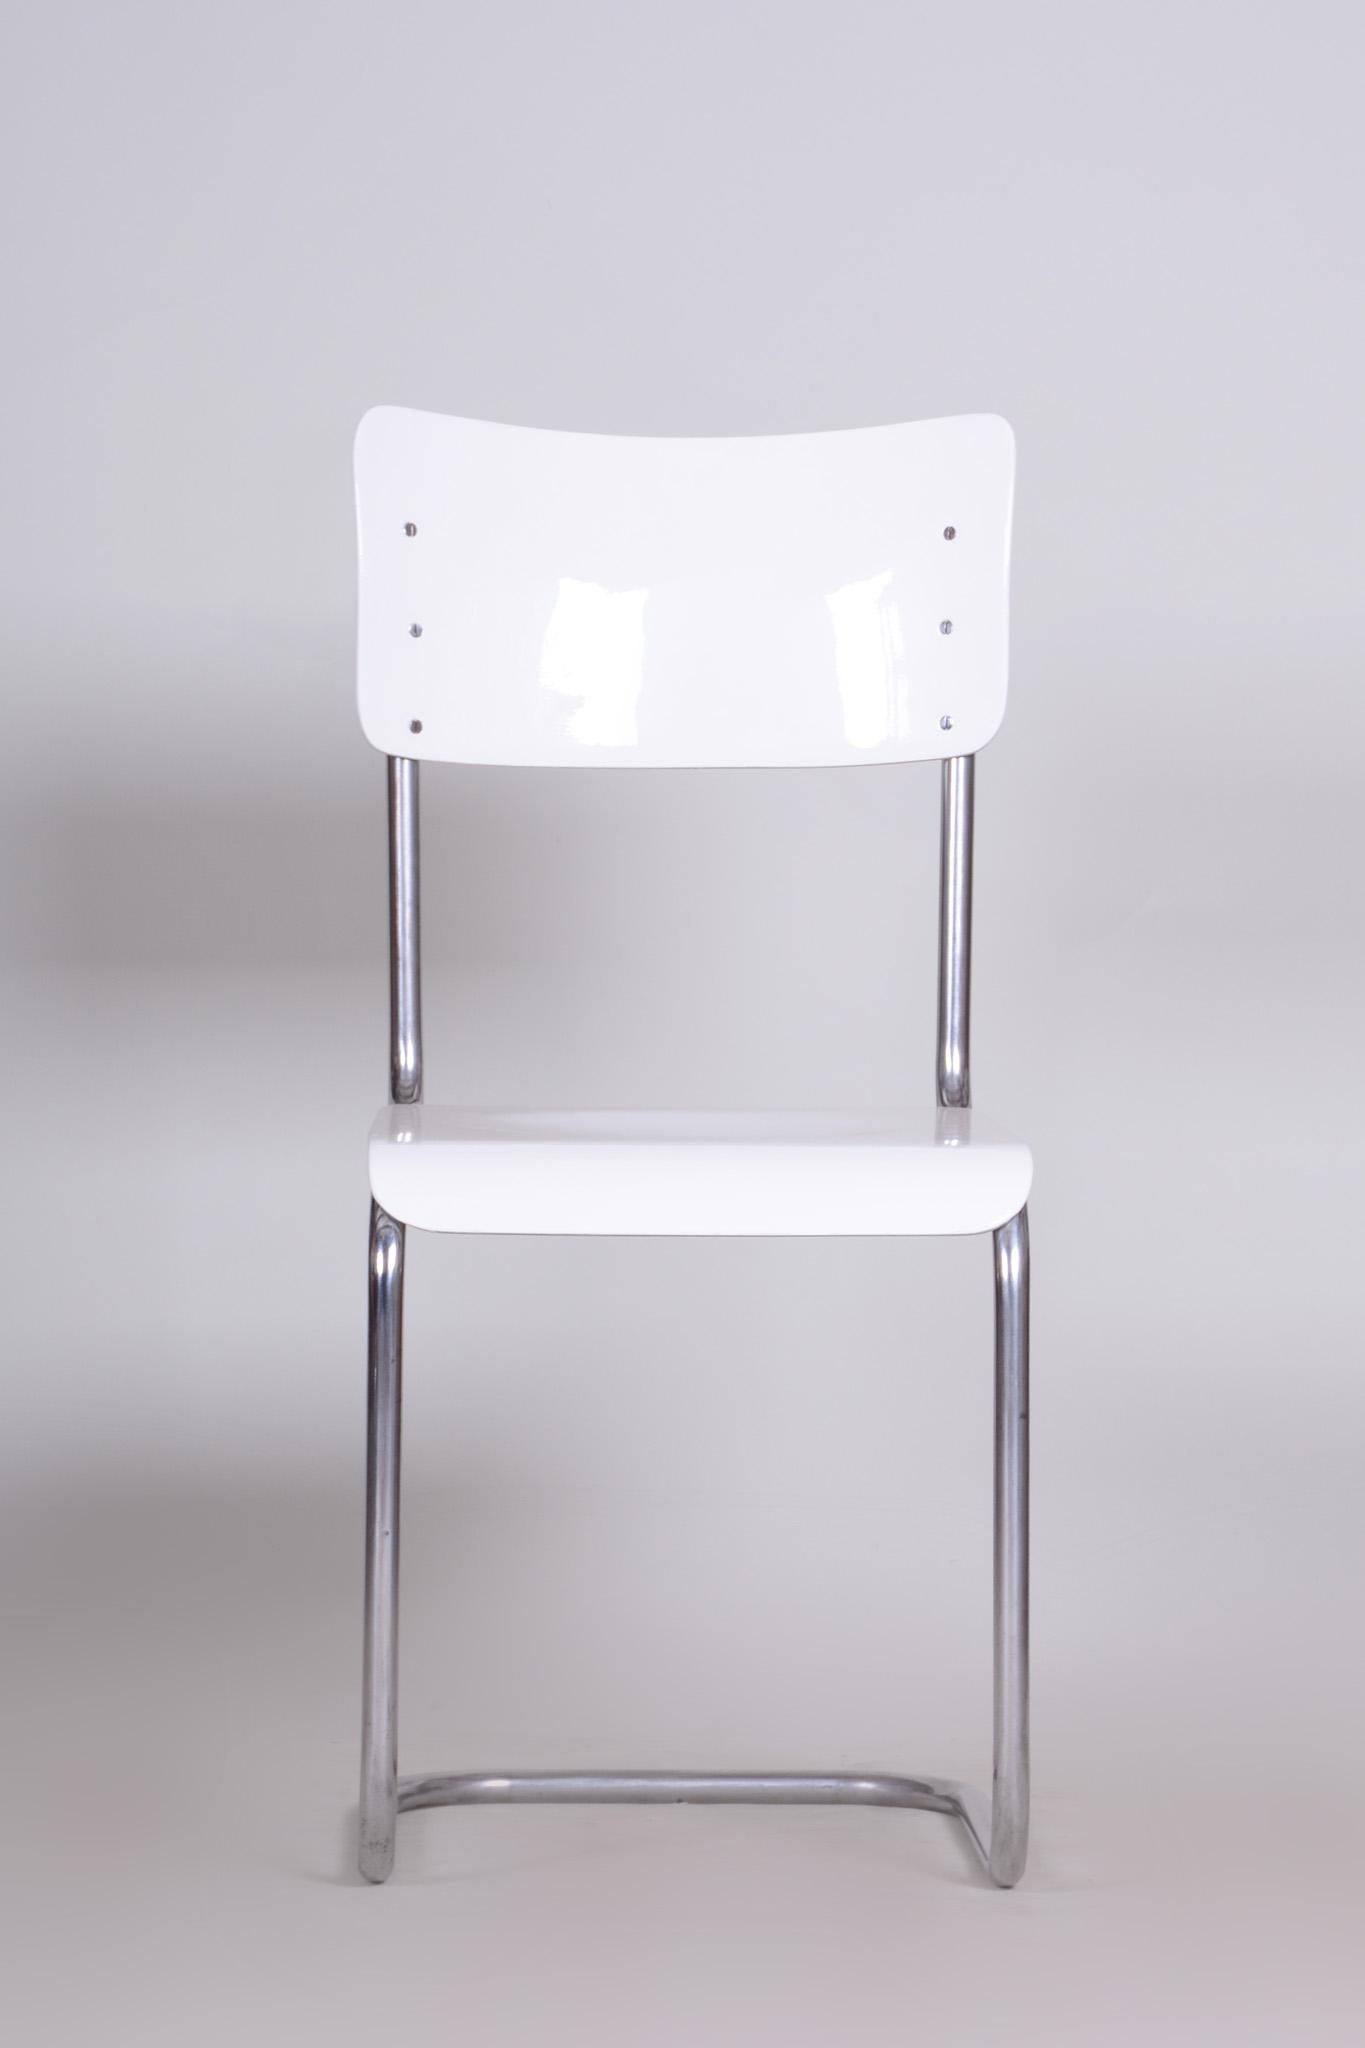 Cette chaise Bauhaus originale fabriquée par Vichr a spol est une représentation parfaite de l'élégance simpliste de l'ère Bauhaus.

Nous garantissons le transport aérien le moins cher d'Europe vers le monde entier dans un délai de 7 jours.
Le